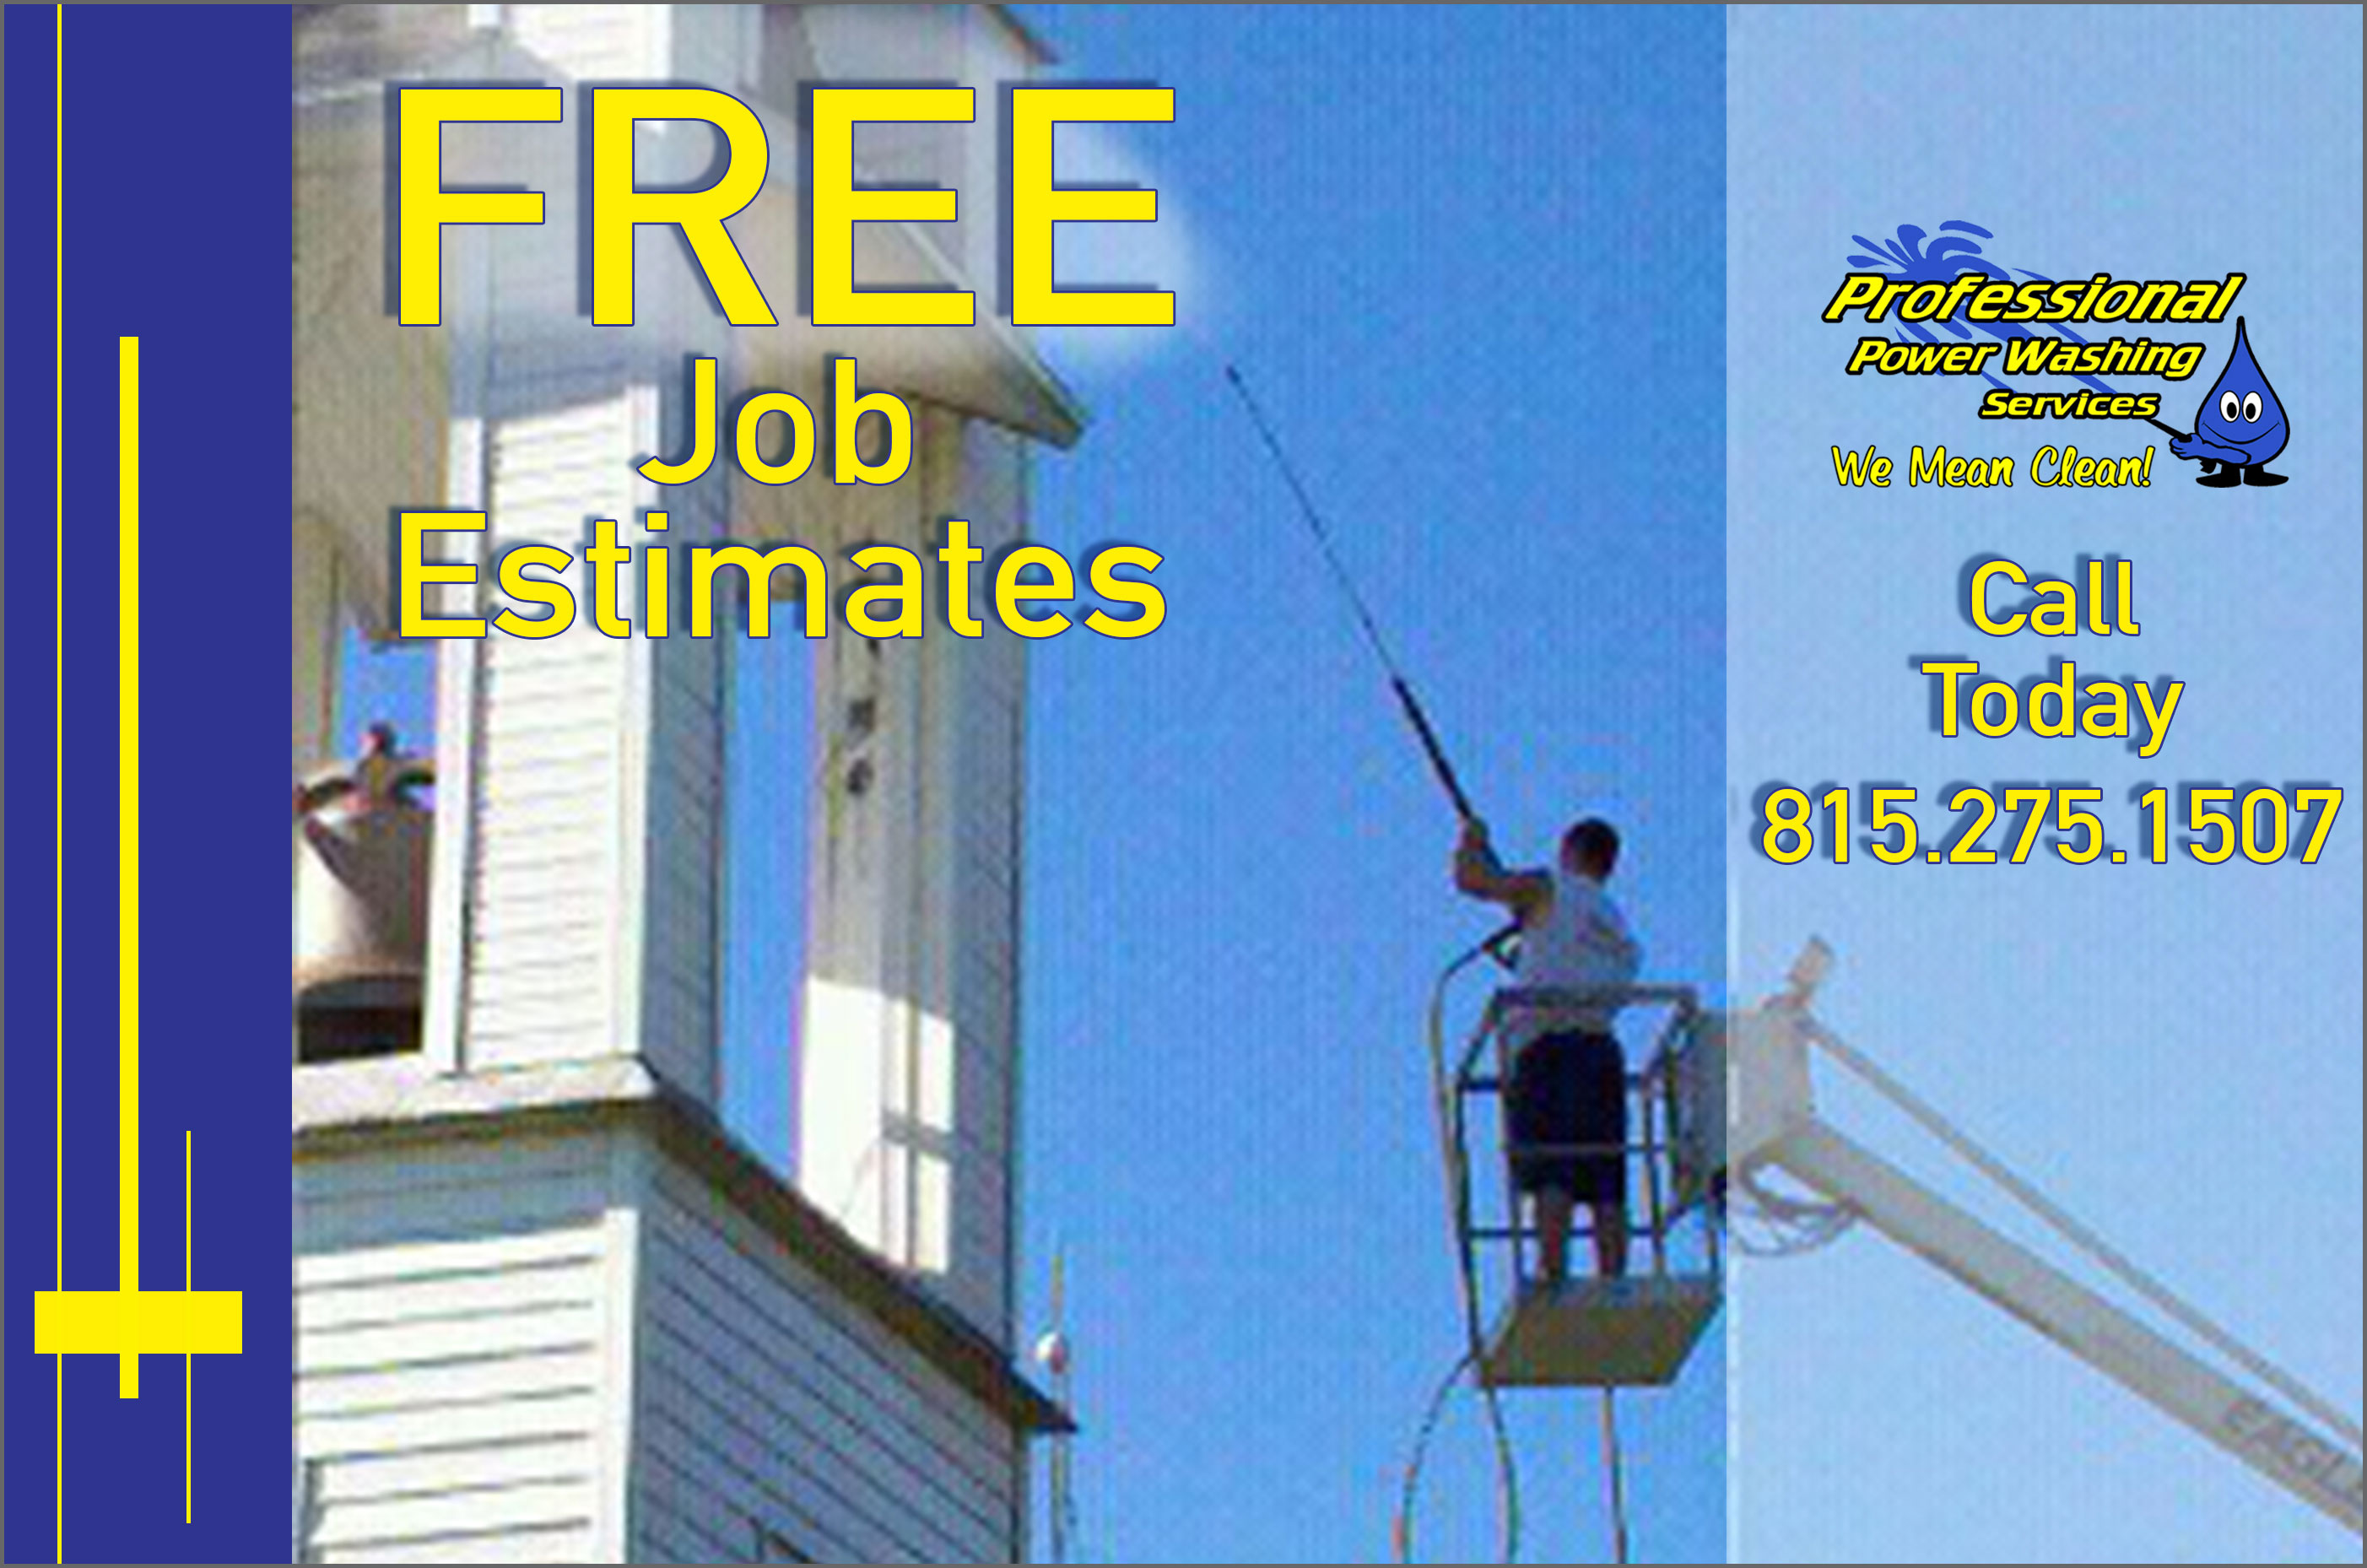 Free Job Estimates